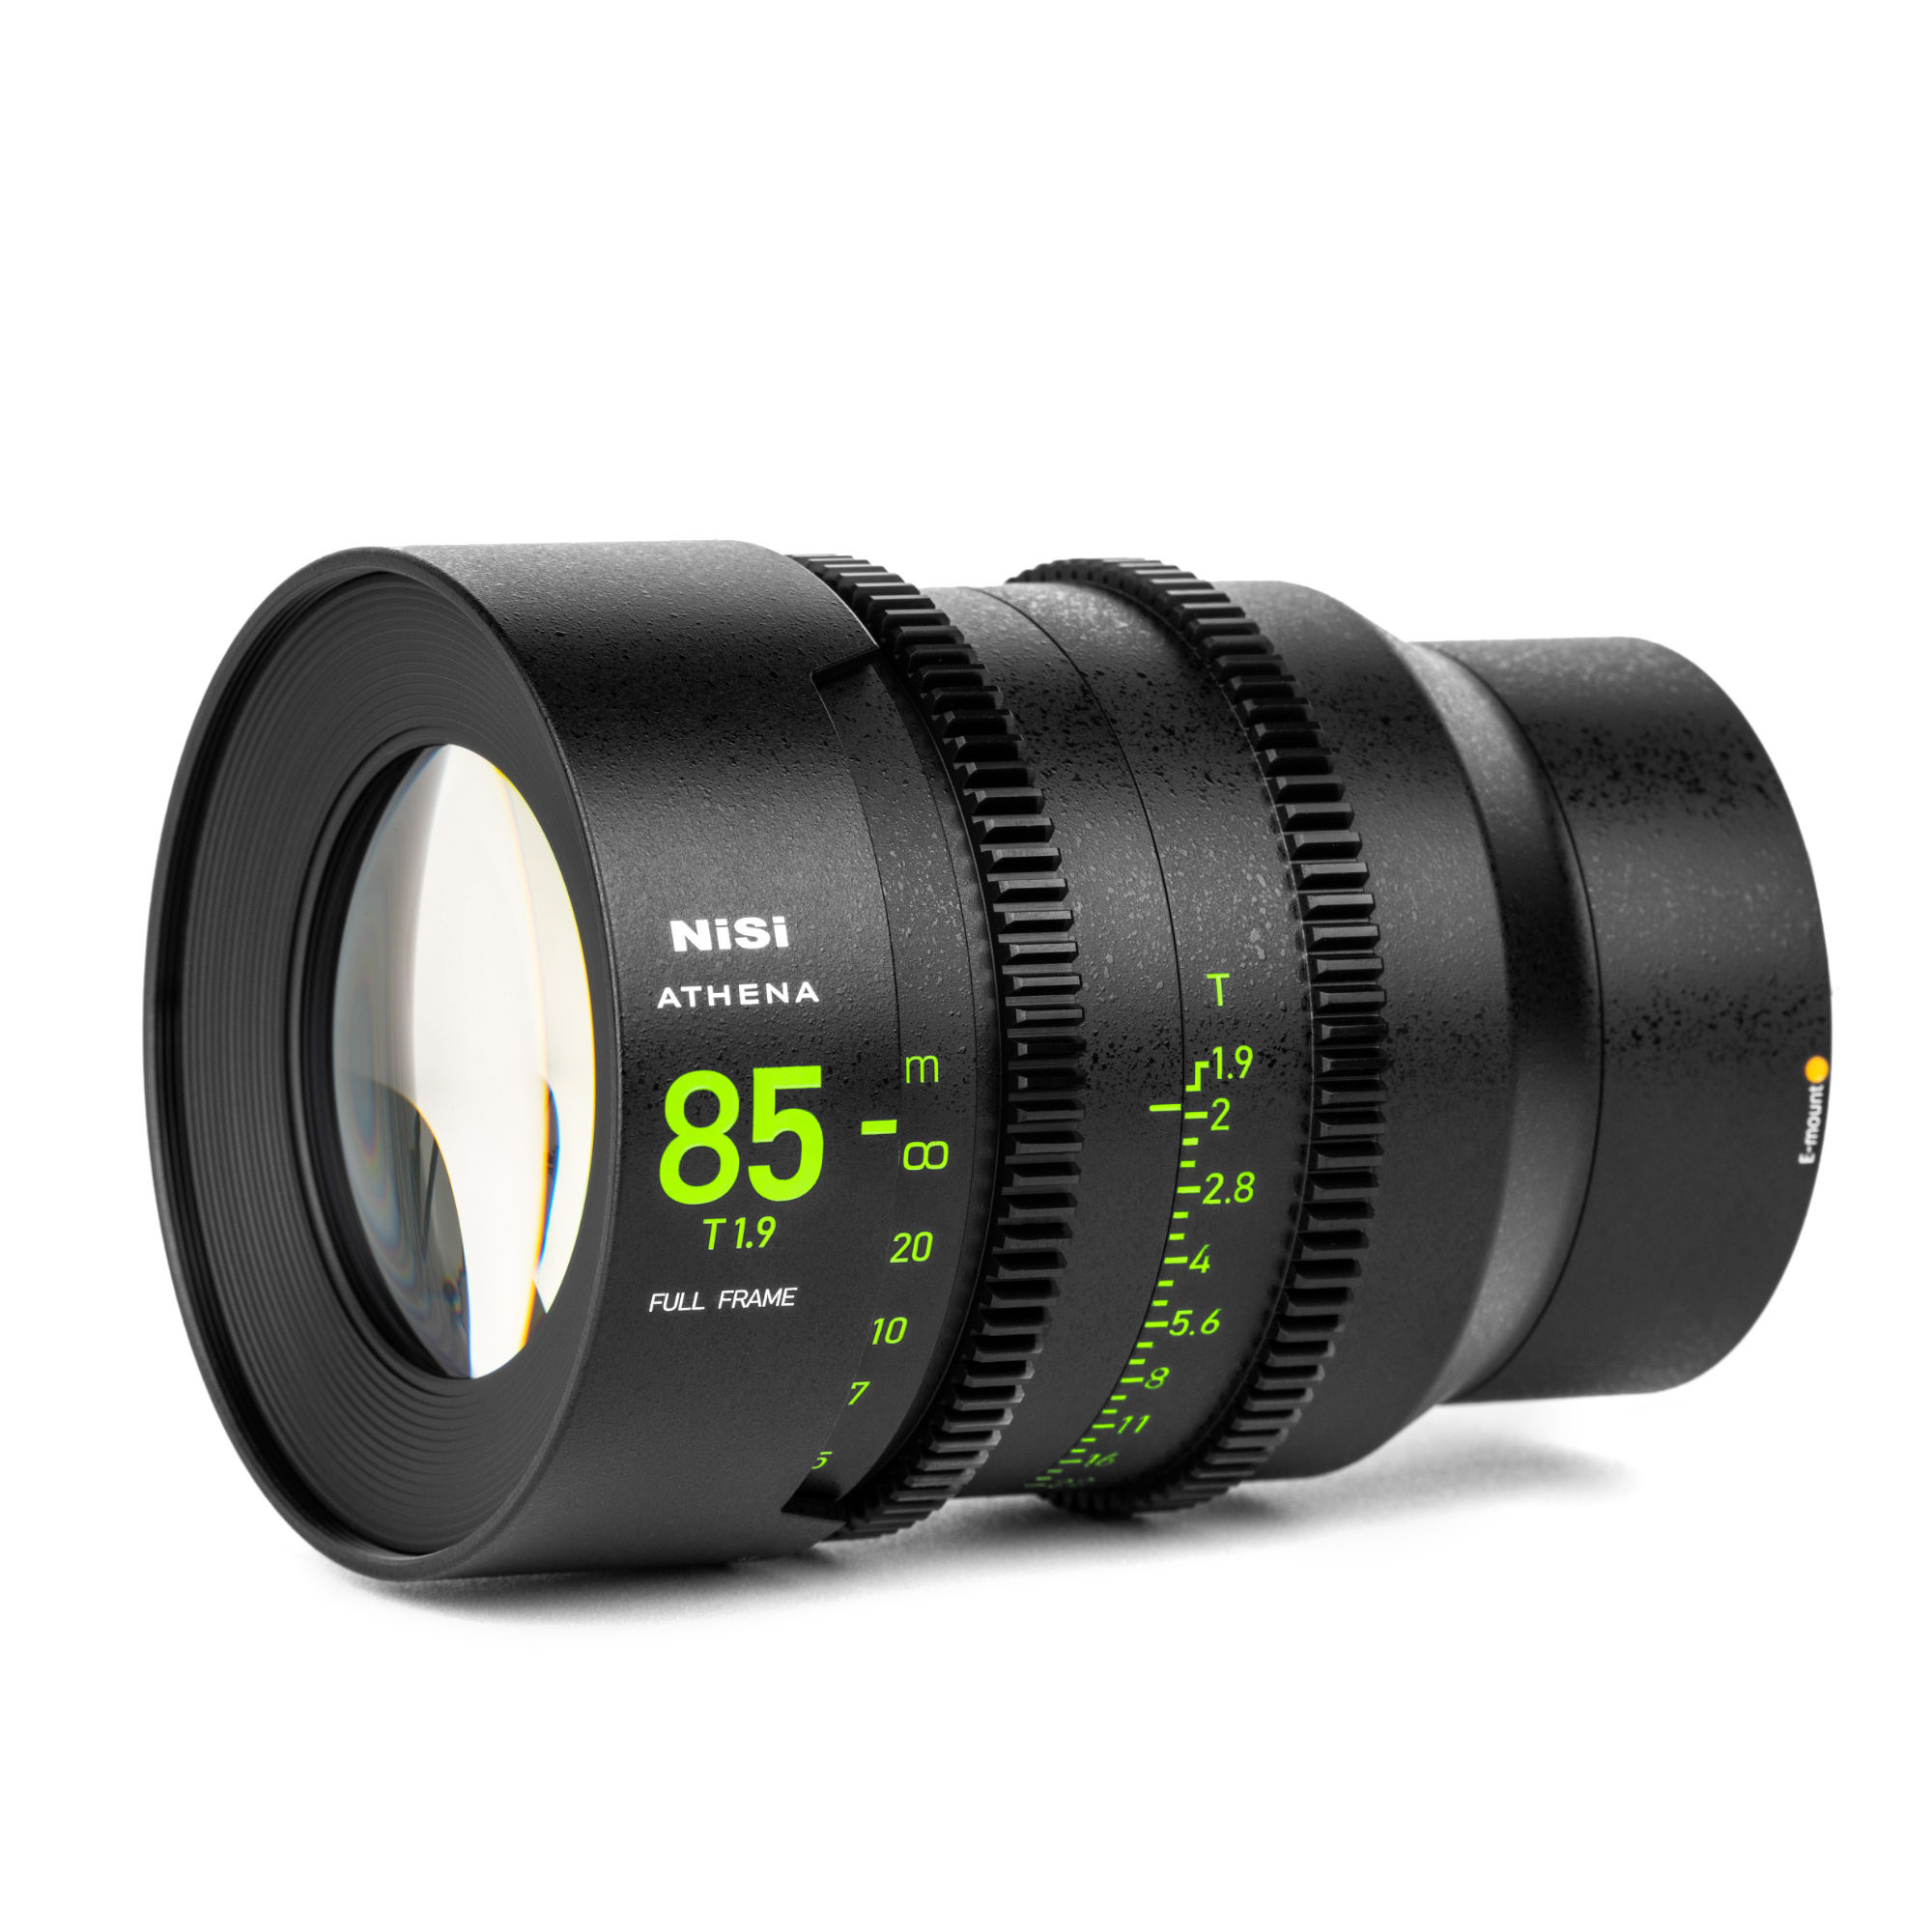 NiSi ATHENA PRIME 85mm T1.9 Full-Frame Lens (E Mount, No Drop-In Filter)